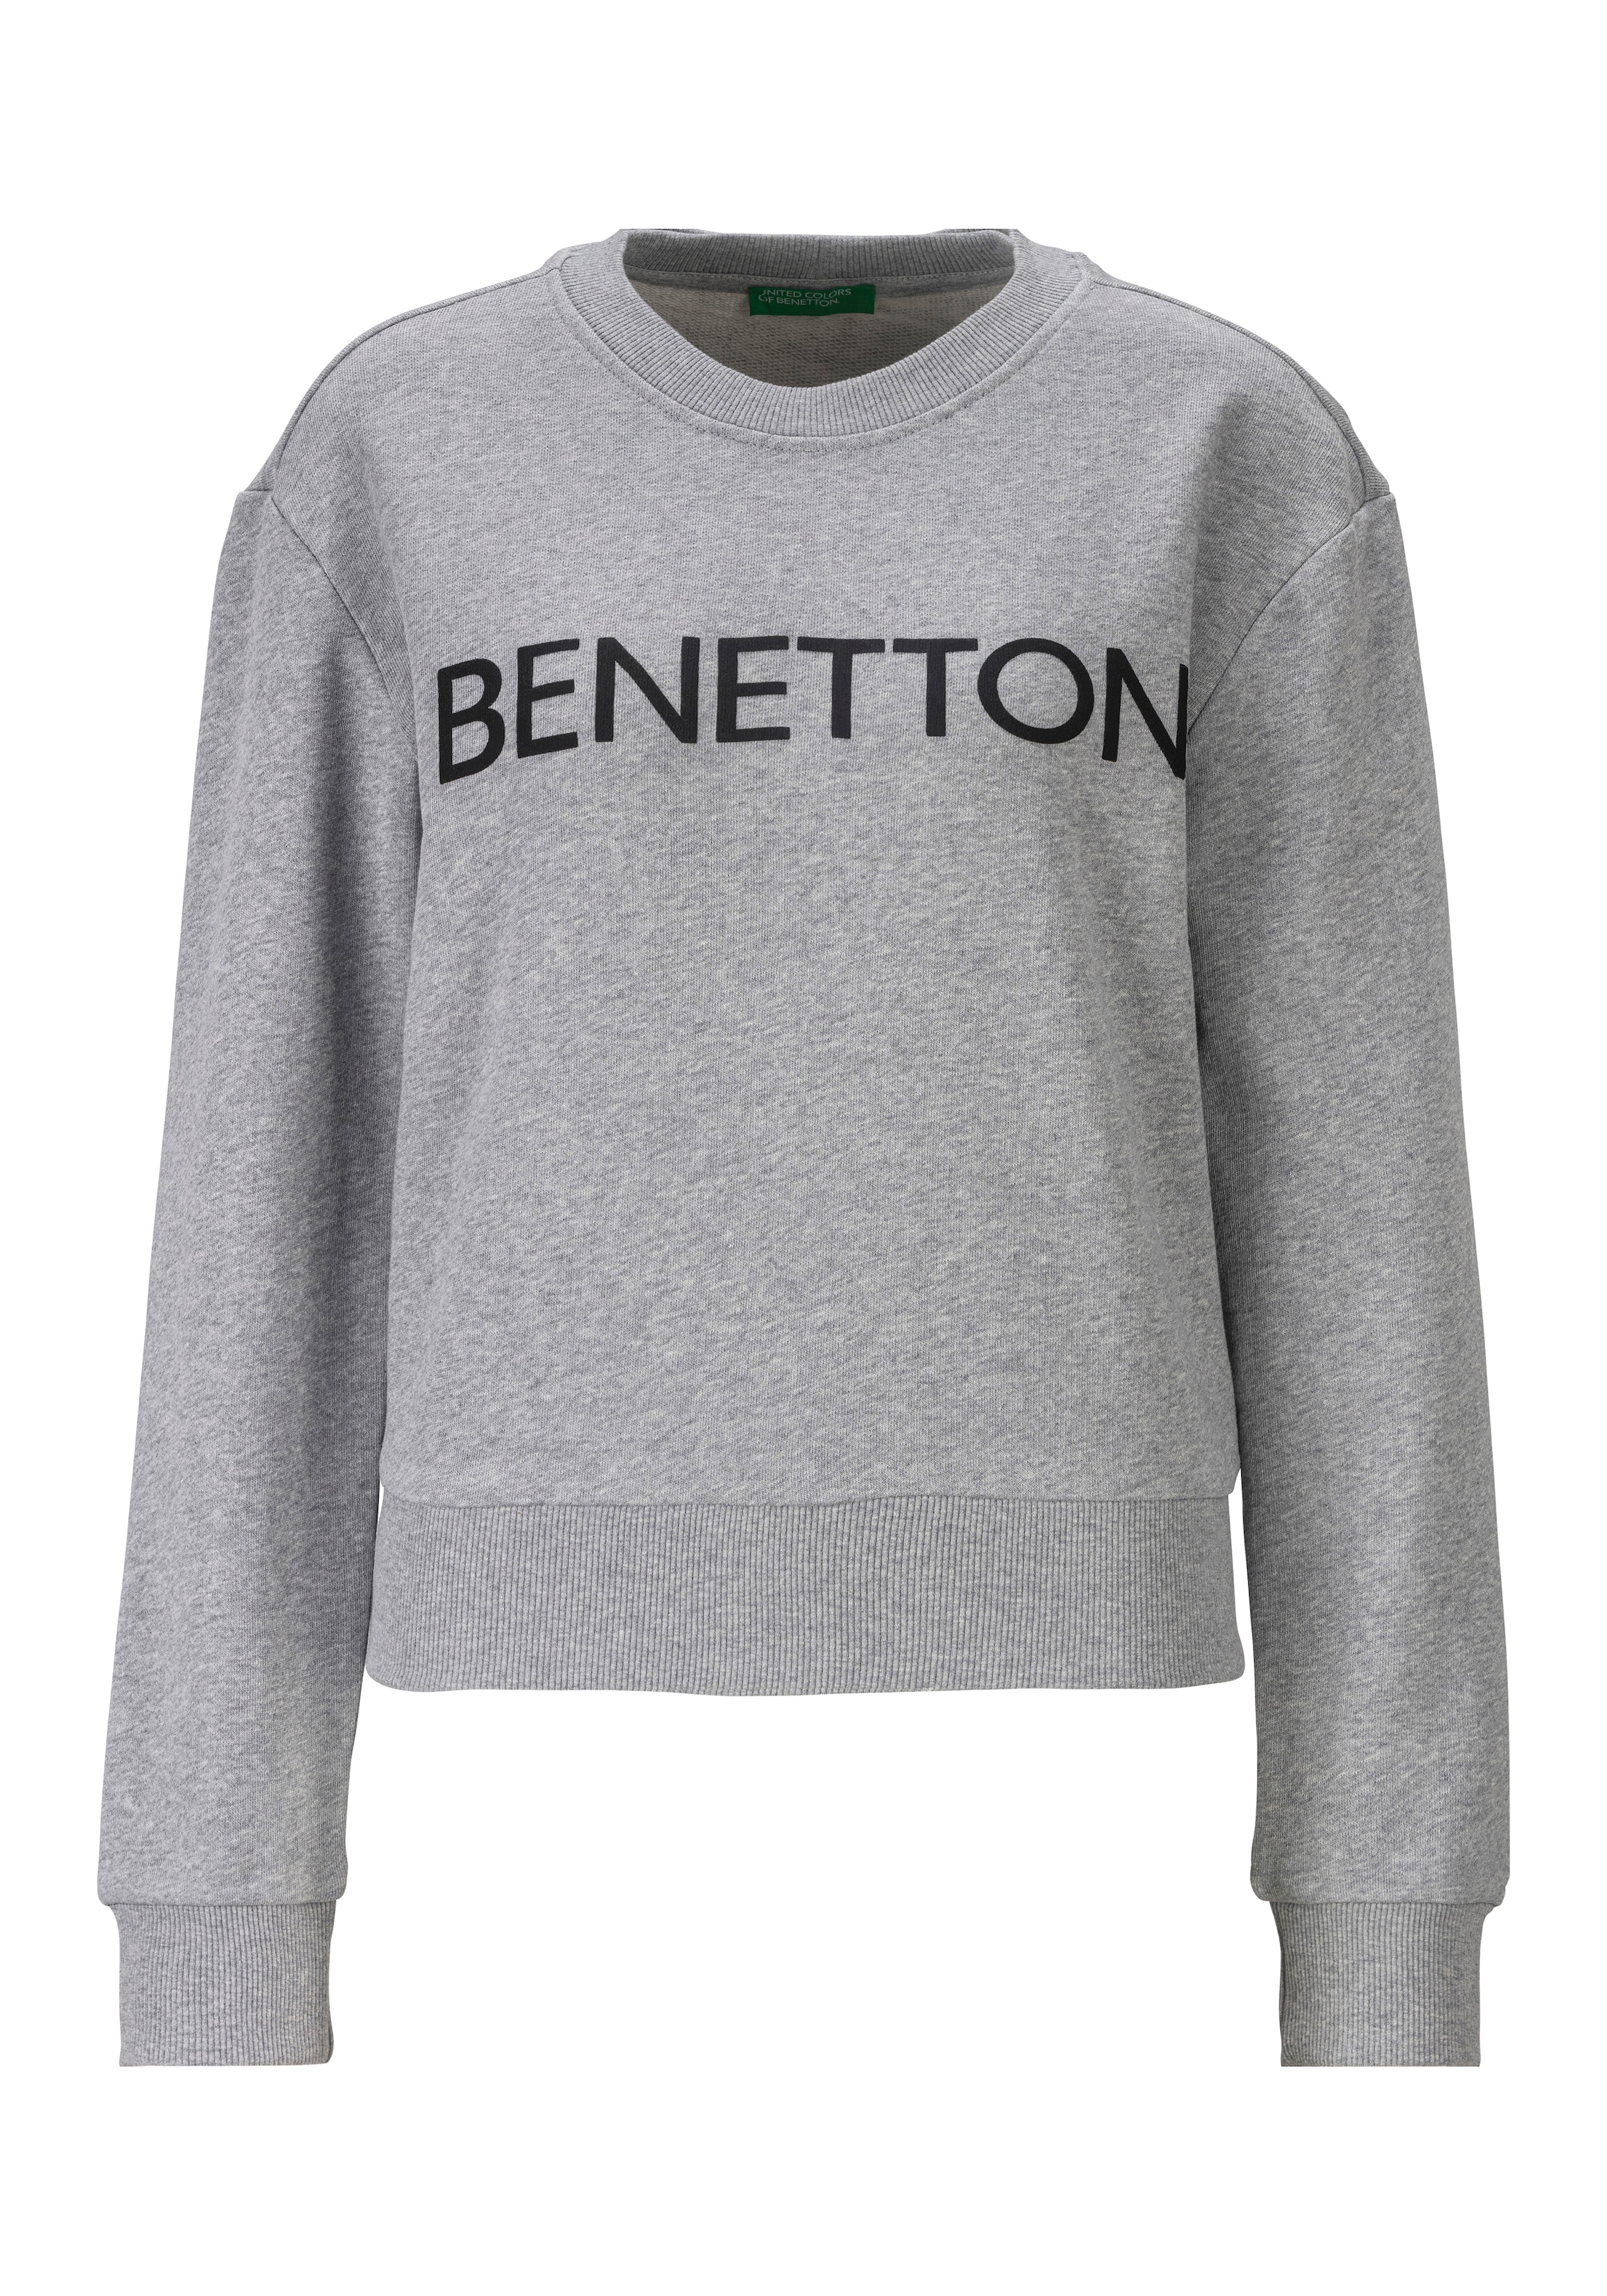 Sweatshirt, mit Benetton Aufdruck